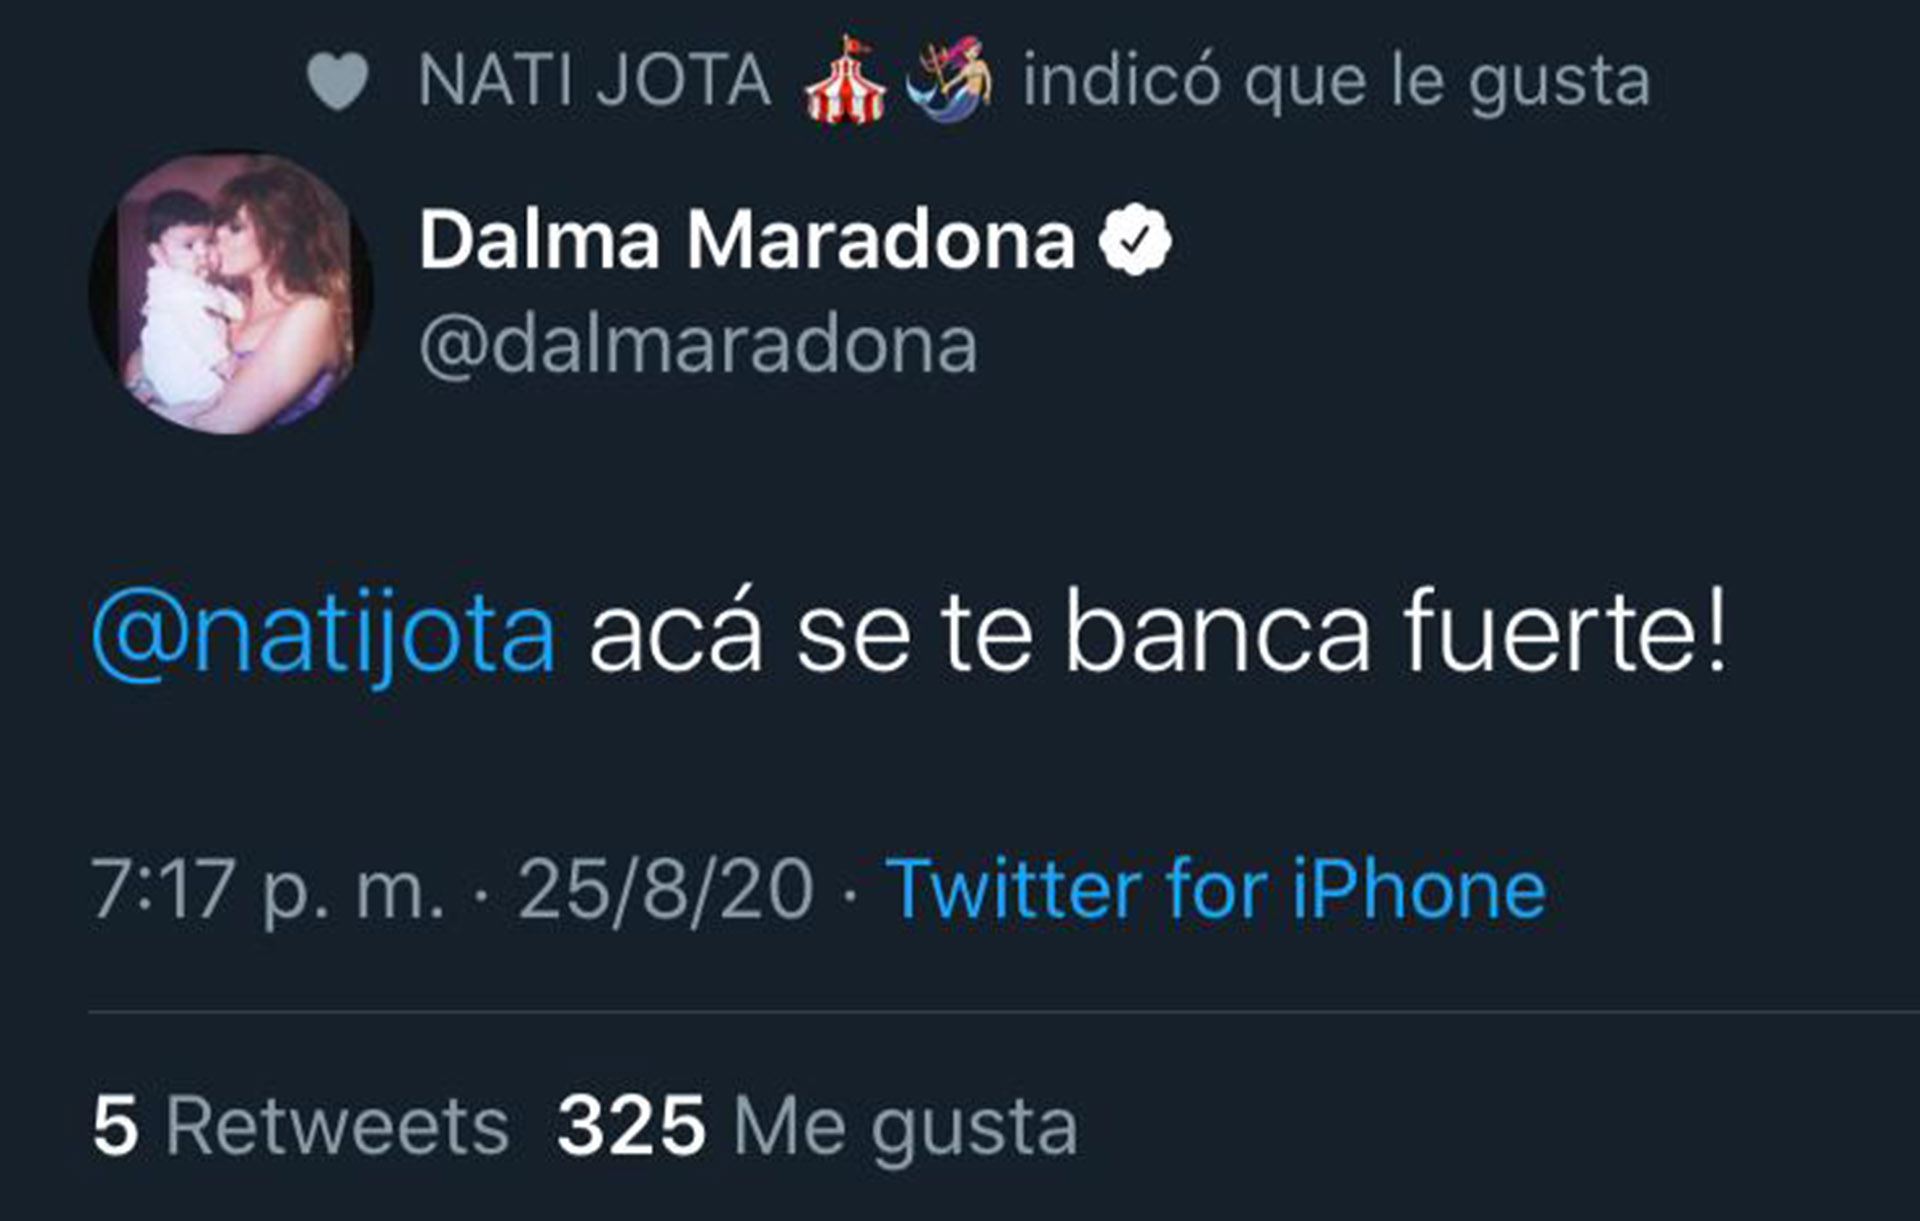 El mensaje de Dalma Maradona en Twitter, respaldando a Nati Jota 